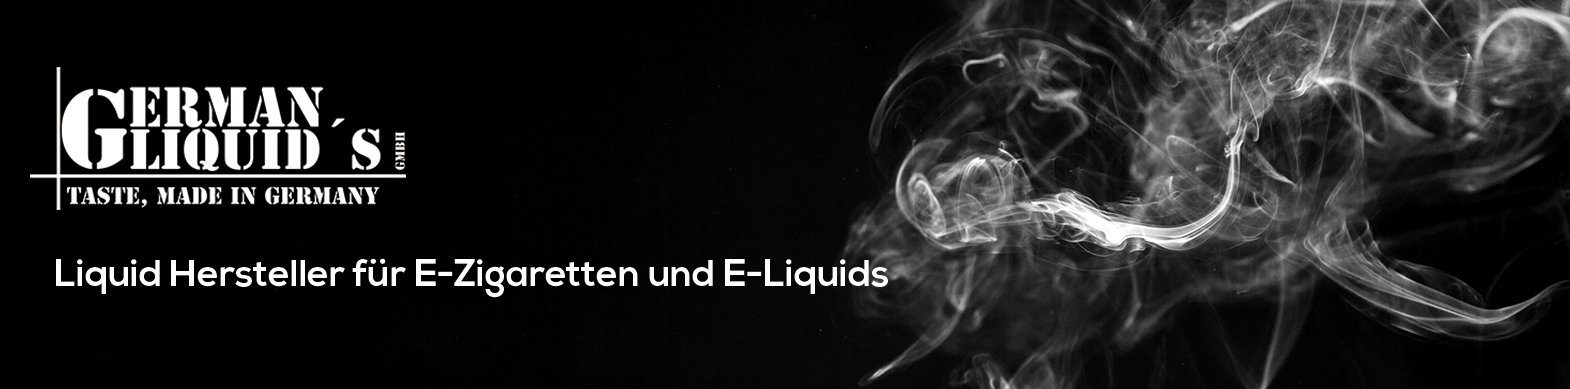 Germanliquids-Slider-Webseite